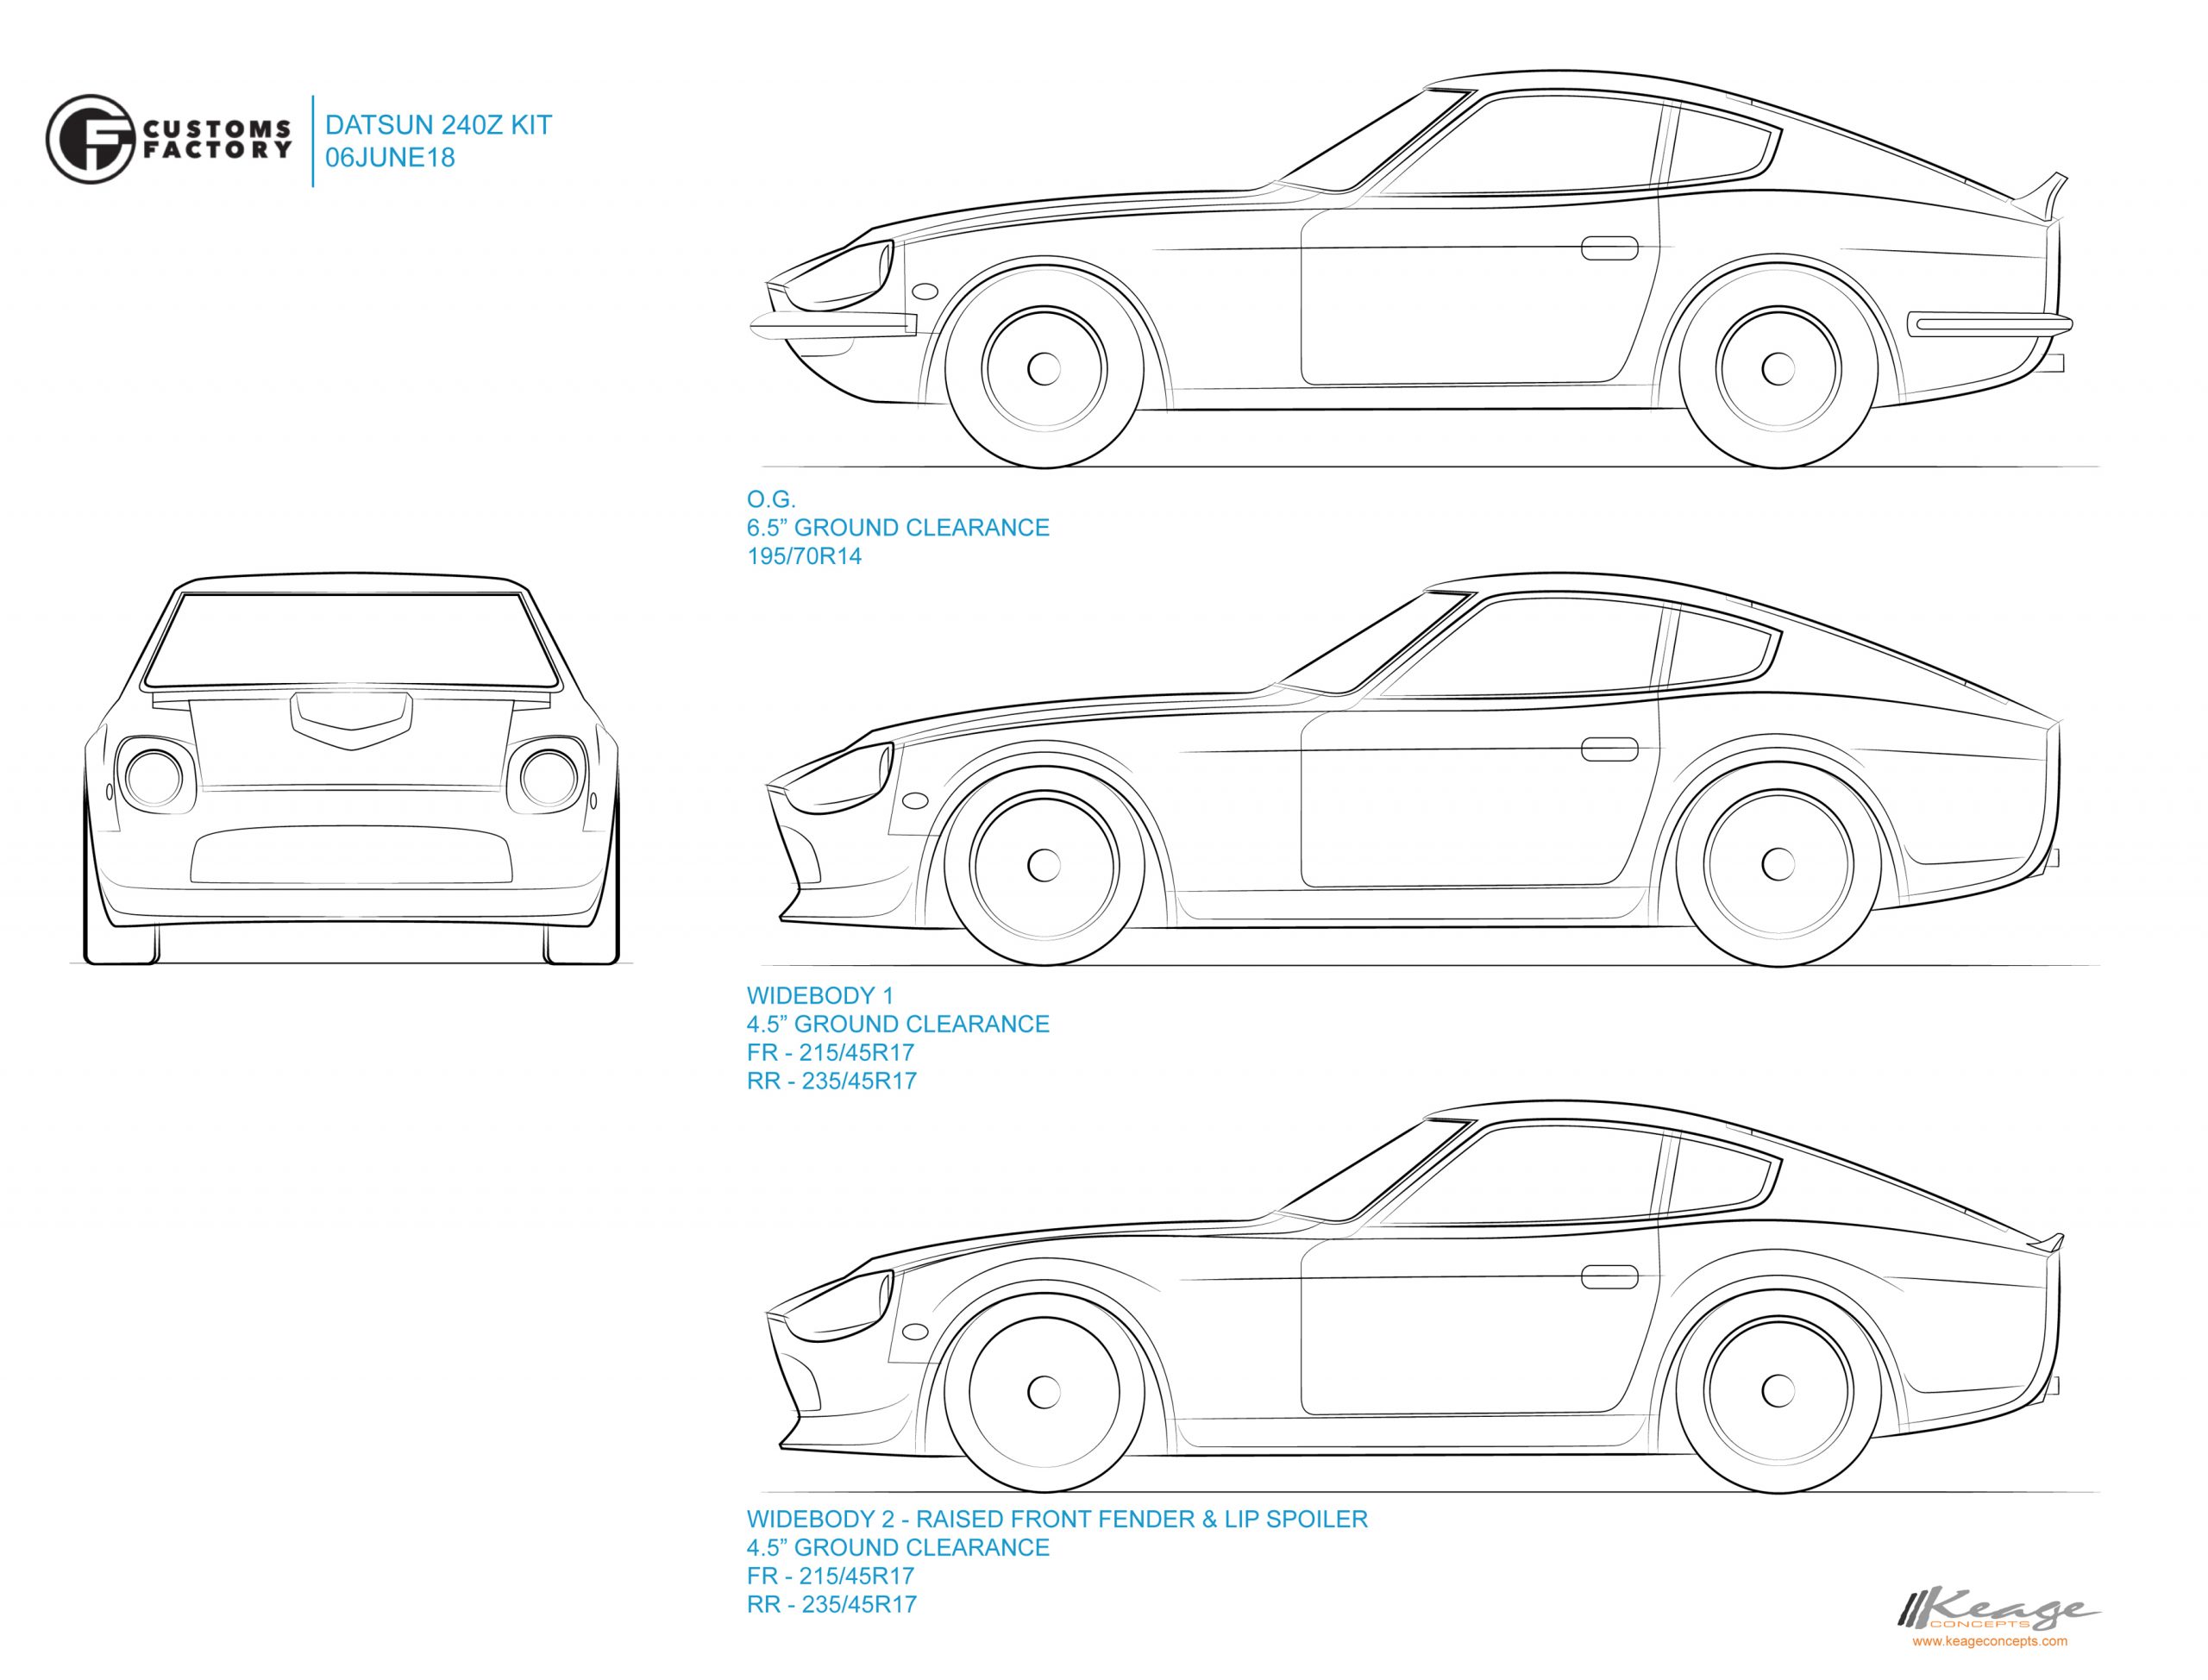 CUSTOMS FACTORY VISION 240Z Keage Concepts Calgary Alberta Automotive Design